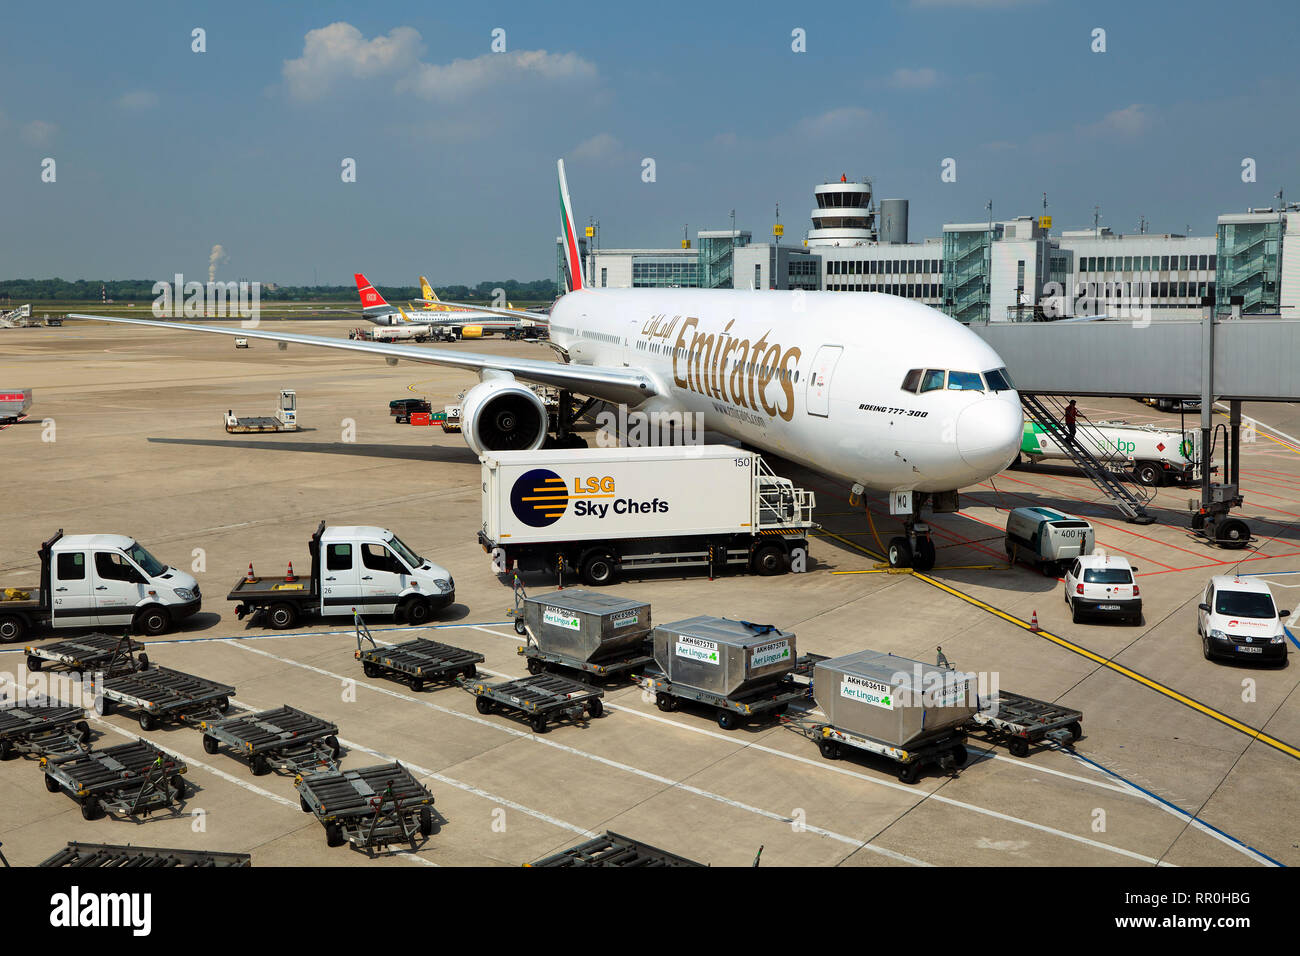 Entladen von Gepäck und Vorbereitung von Flugzeugen des Typs Boeing 777 der  Fluggesellschaft Emirates Airline am Flughafen Düsseldorf, Deutschland  Stockfotografie - Alamy